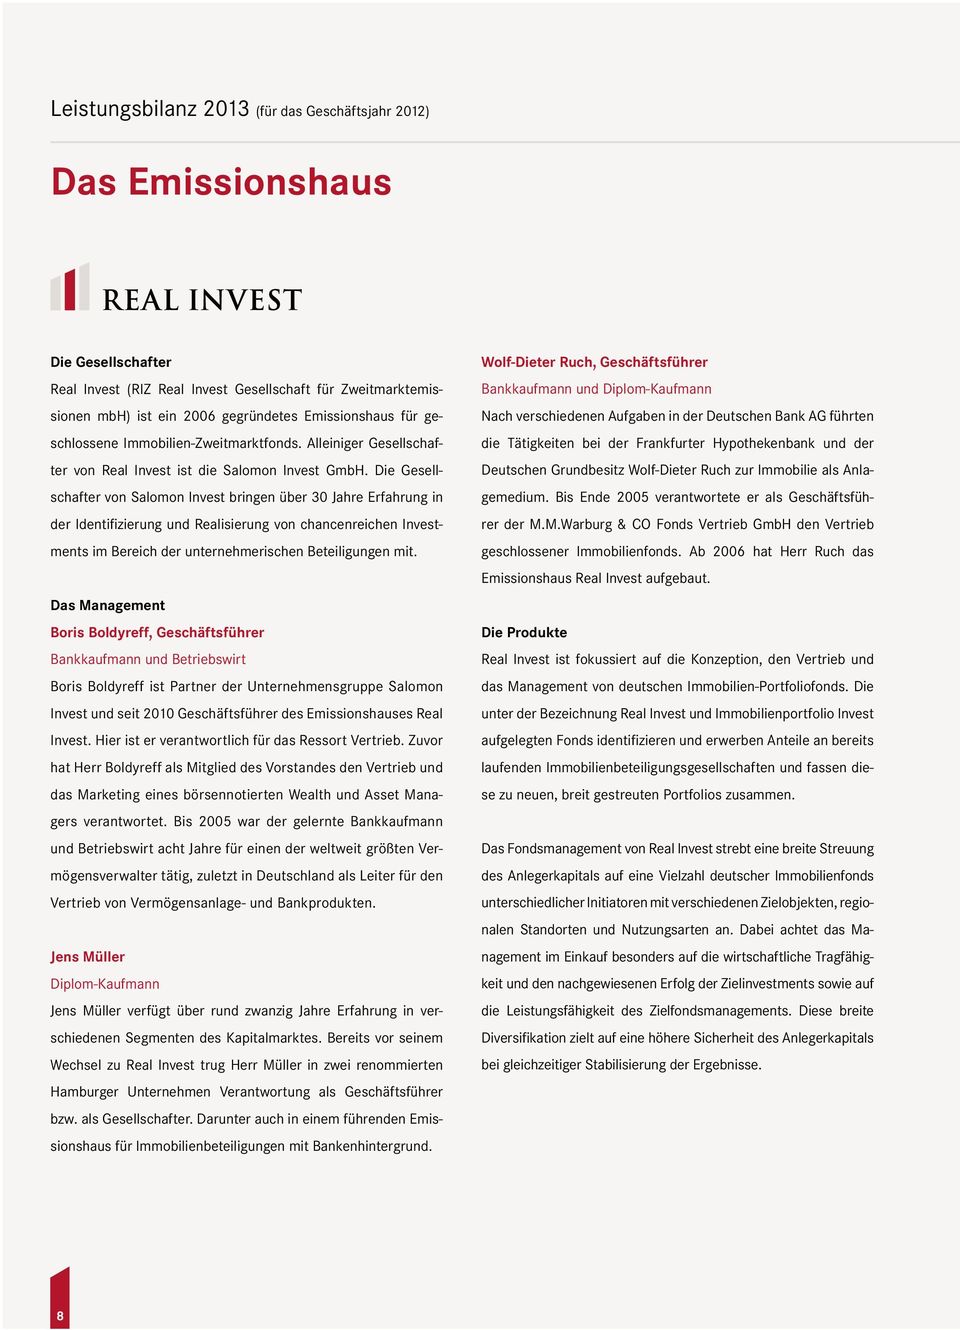 Die Gesellschafter von Salomon Invest bringen über 30 Jahre Erfahrung in der Identifizierung und Realisierung von chancenreichen Investments im Bereich der unternehmerischen Beteiligungen mit.